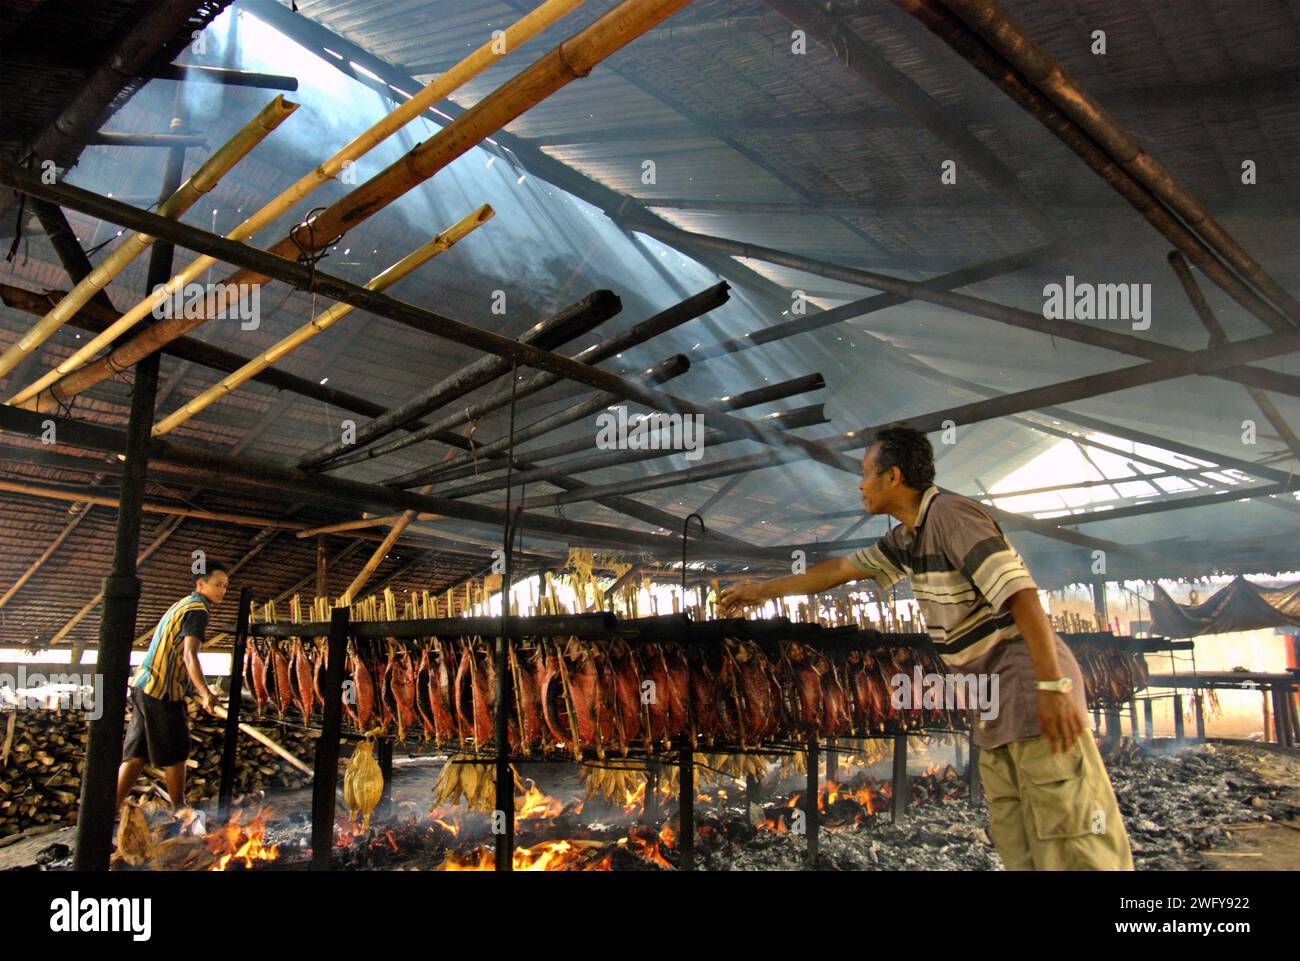 Eine geräucherte Fischproduktion, bei der Bonito-Thunfischfleisch in einer heimischen Industrie in Bitung, Nord-Sulawesi, Indonesien, verwendet wird. Der Beitrag der indigenen Bevölkerung zur technologischen Innovation bietet eine breite Palette von Optionen für die Bewältigung unter anderem der Ernährungssicherheit, so der Bericht des Zwischenstaatlichen Ausschusses für Klimaänderungen (IPCC) aus dem Jahr 2023. Der im Volksmund als Cakalang Fufu bekannte geräucherte Thunfisch gilt als exotisches einheimisches Essen, ein Teil der Produktion von Bonito-Thunfischen, die zu den wichtigsten wirtschaftlichen Aktivitäten in Bitung City gehört. Stockfoto